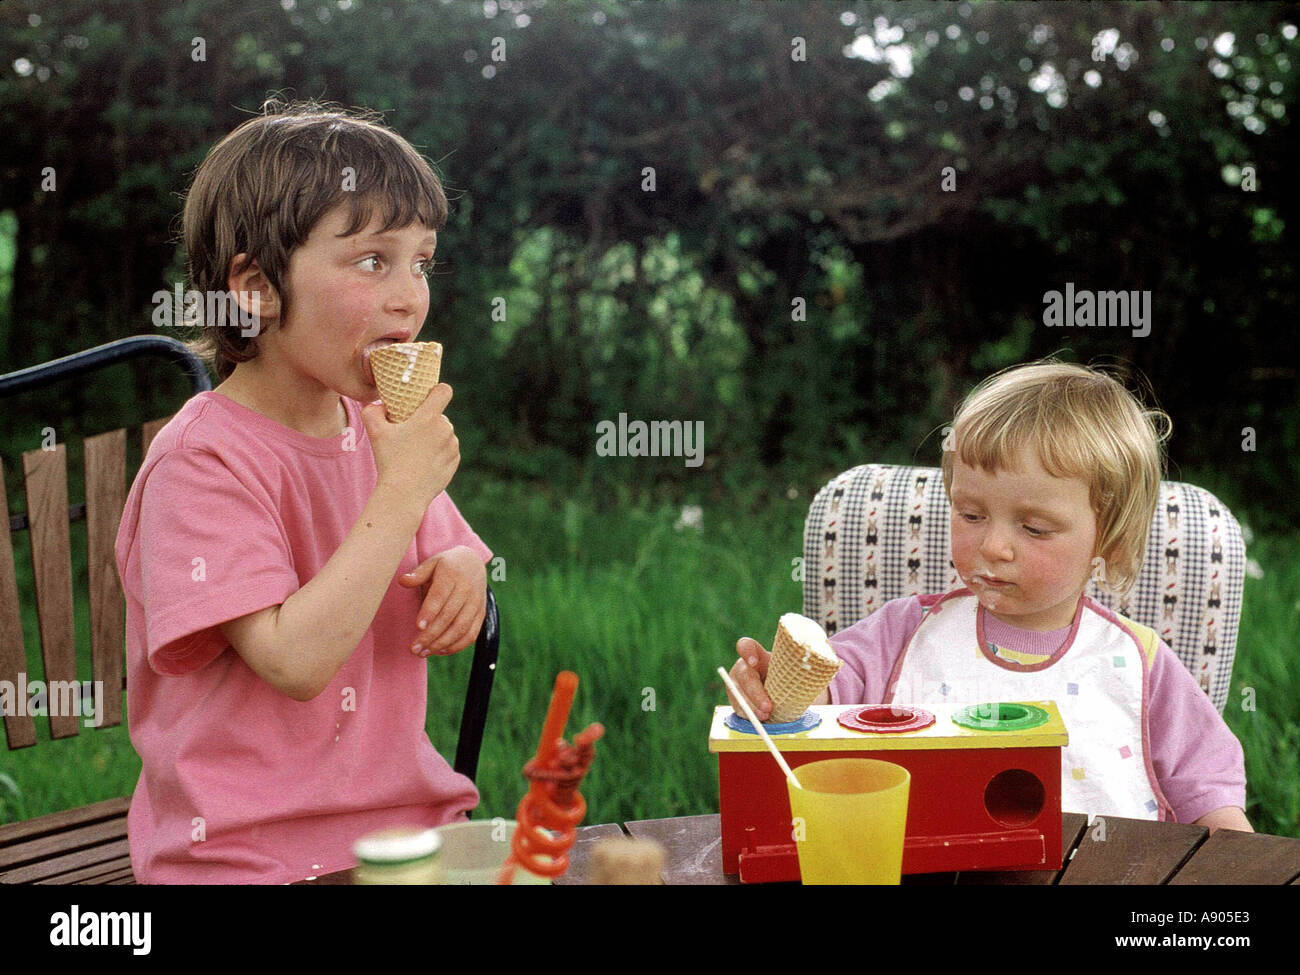 zwei junge Kinder Eis essen und spielen mit Spielzeug Stockfoto